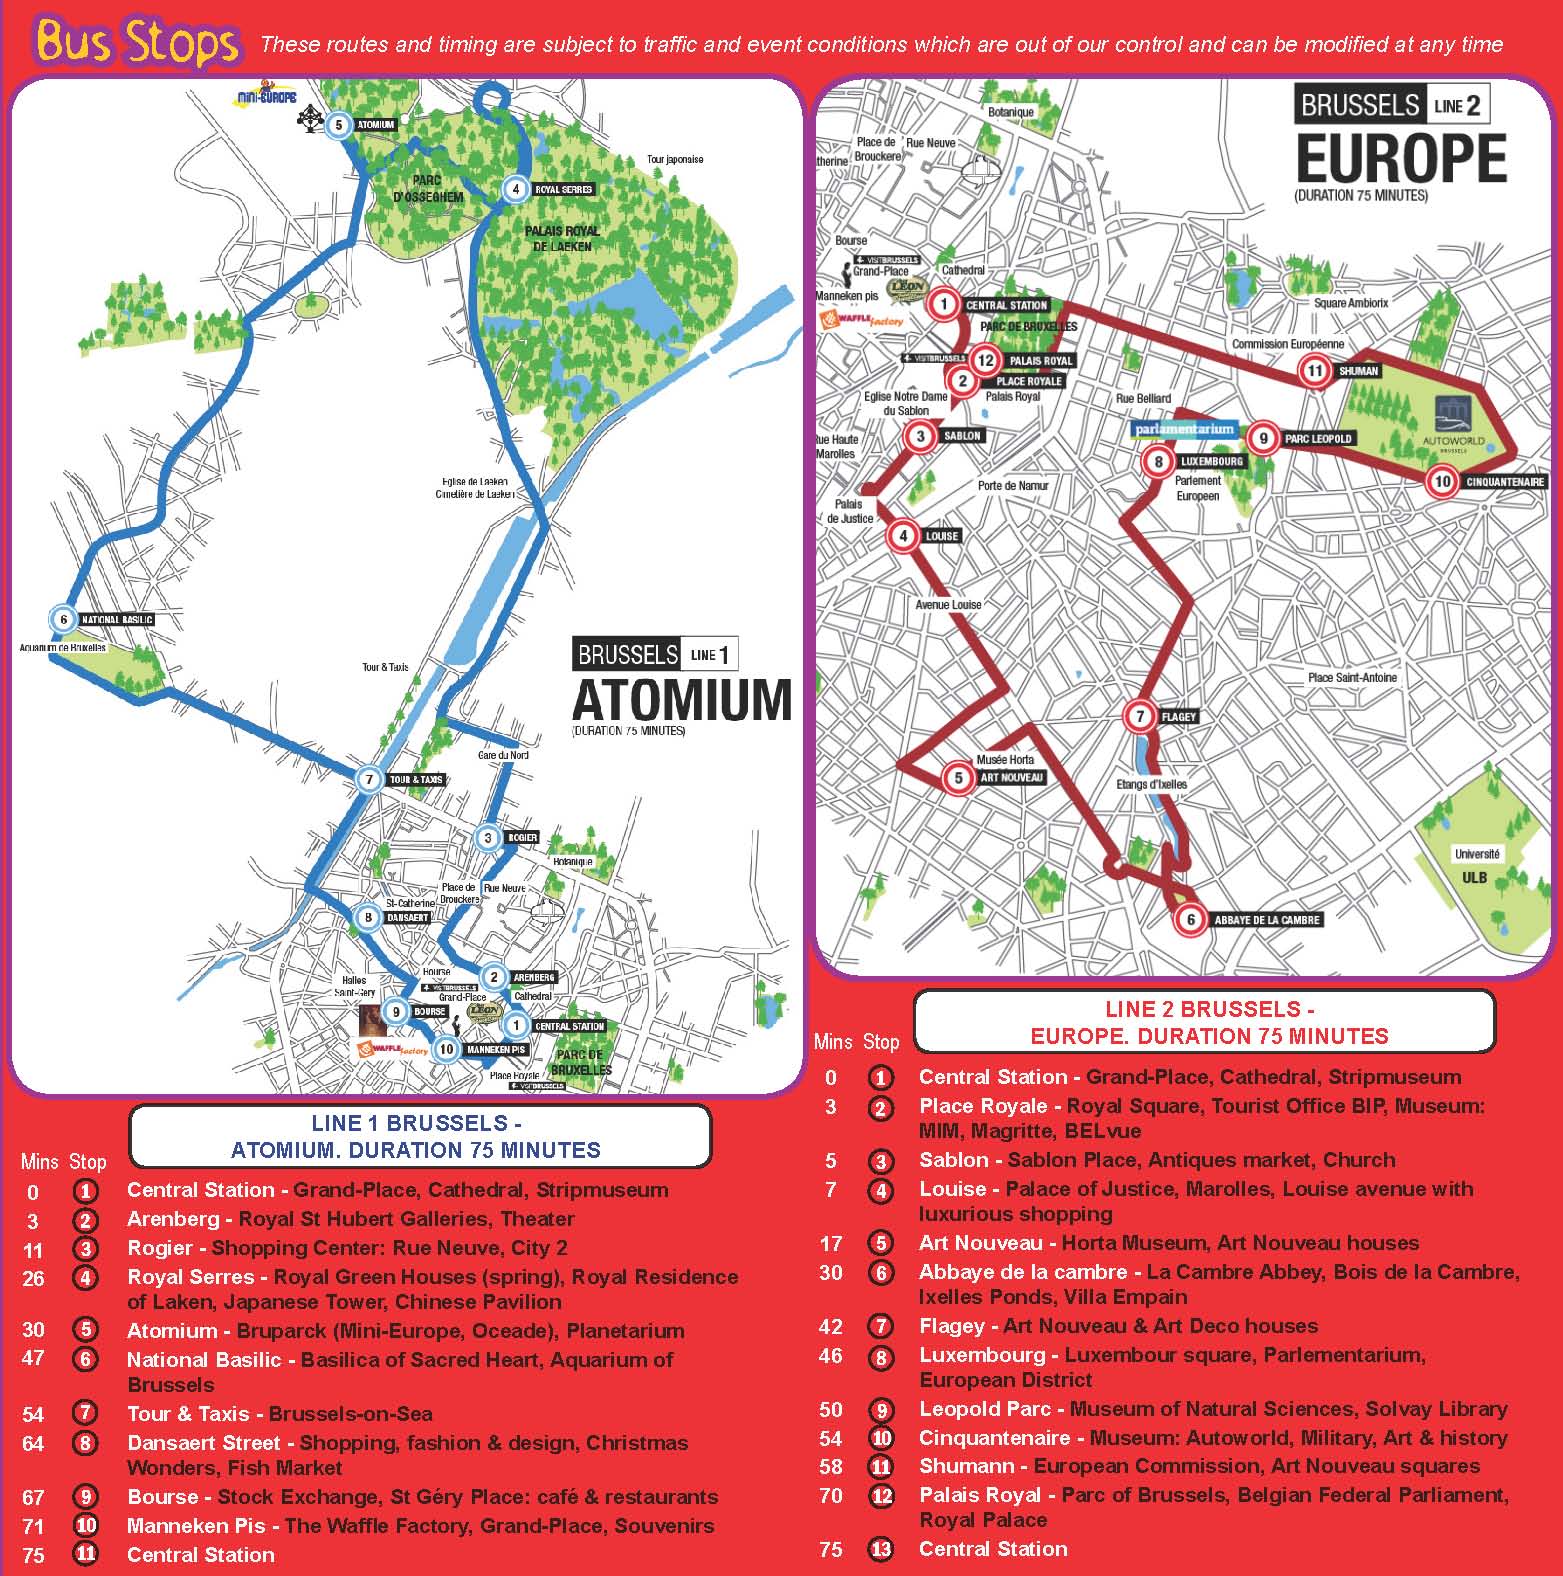 Stadtrundfahrt Brüssel Hop On Hop Off | Online buchen & sparen | GROUNDLINE